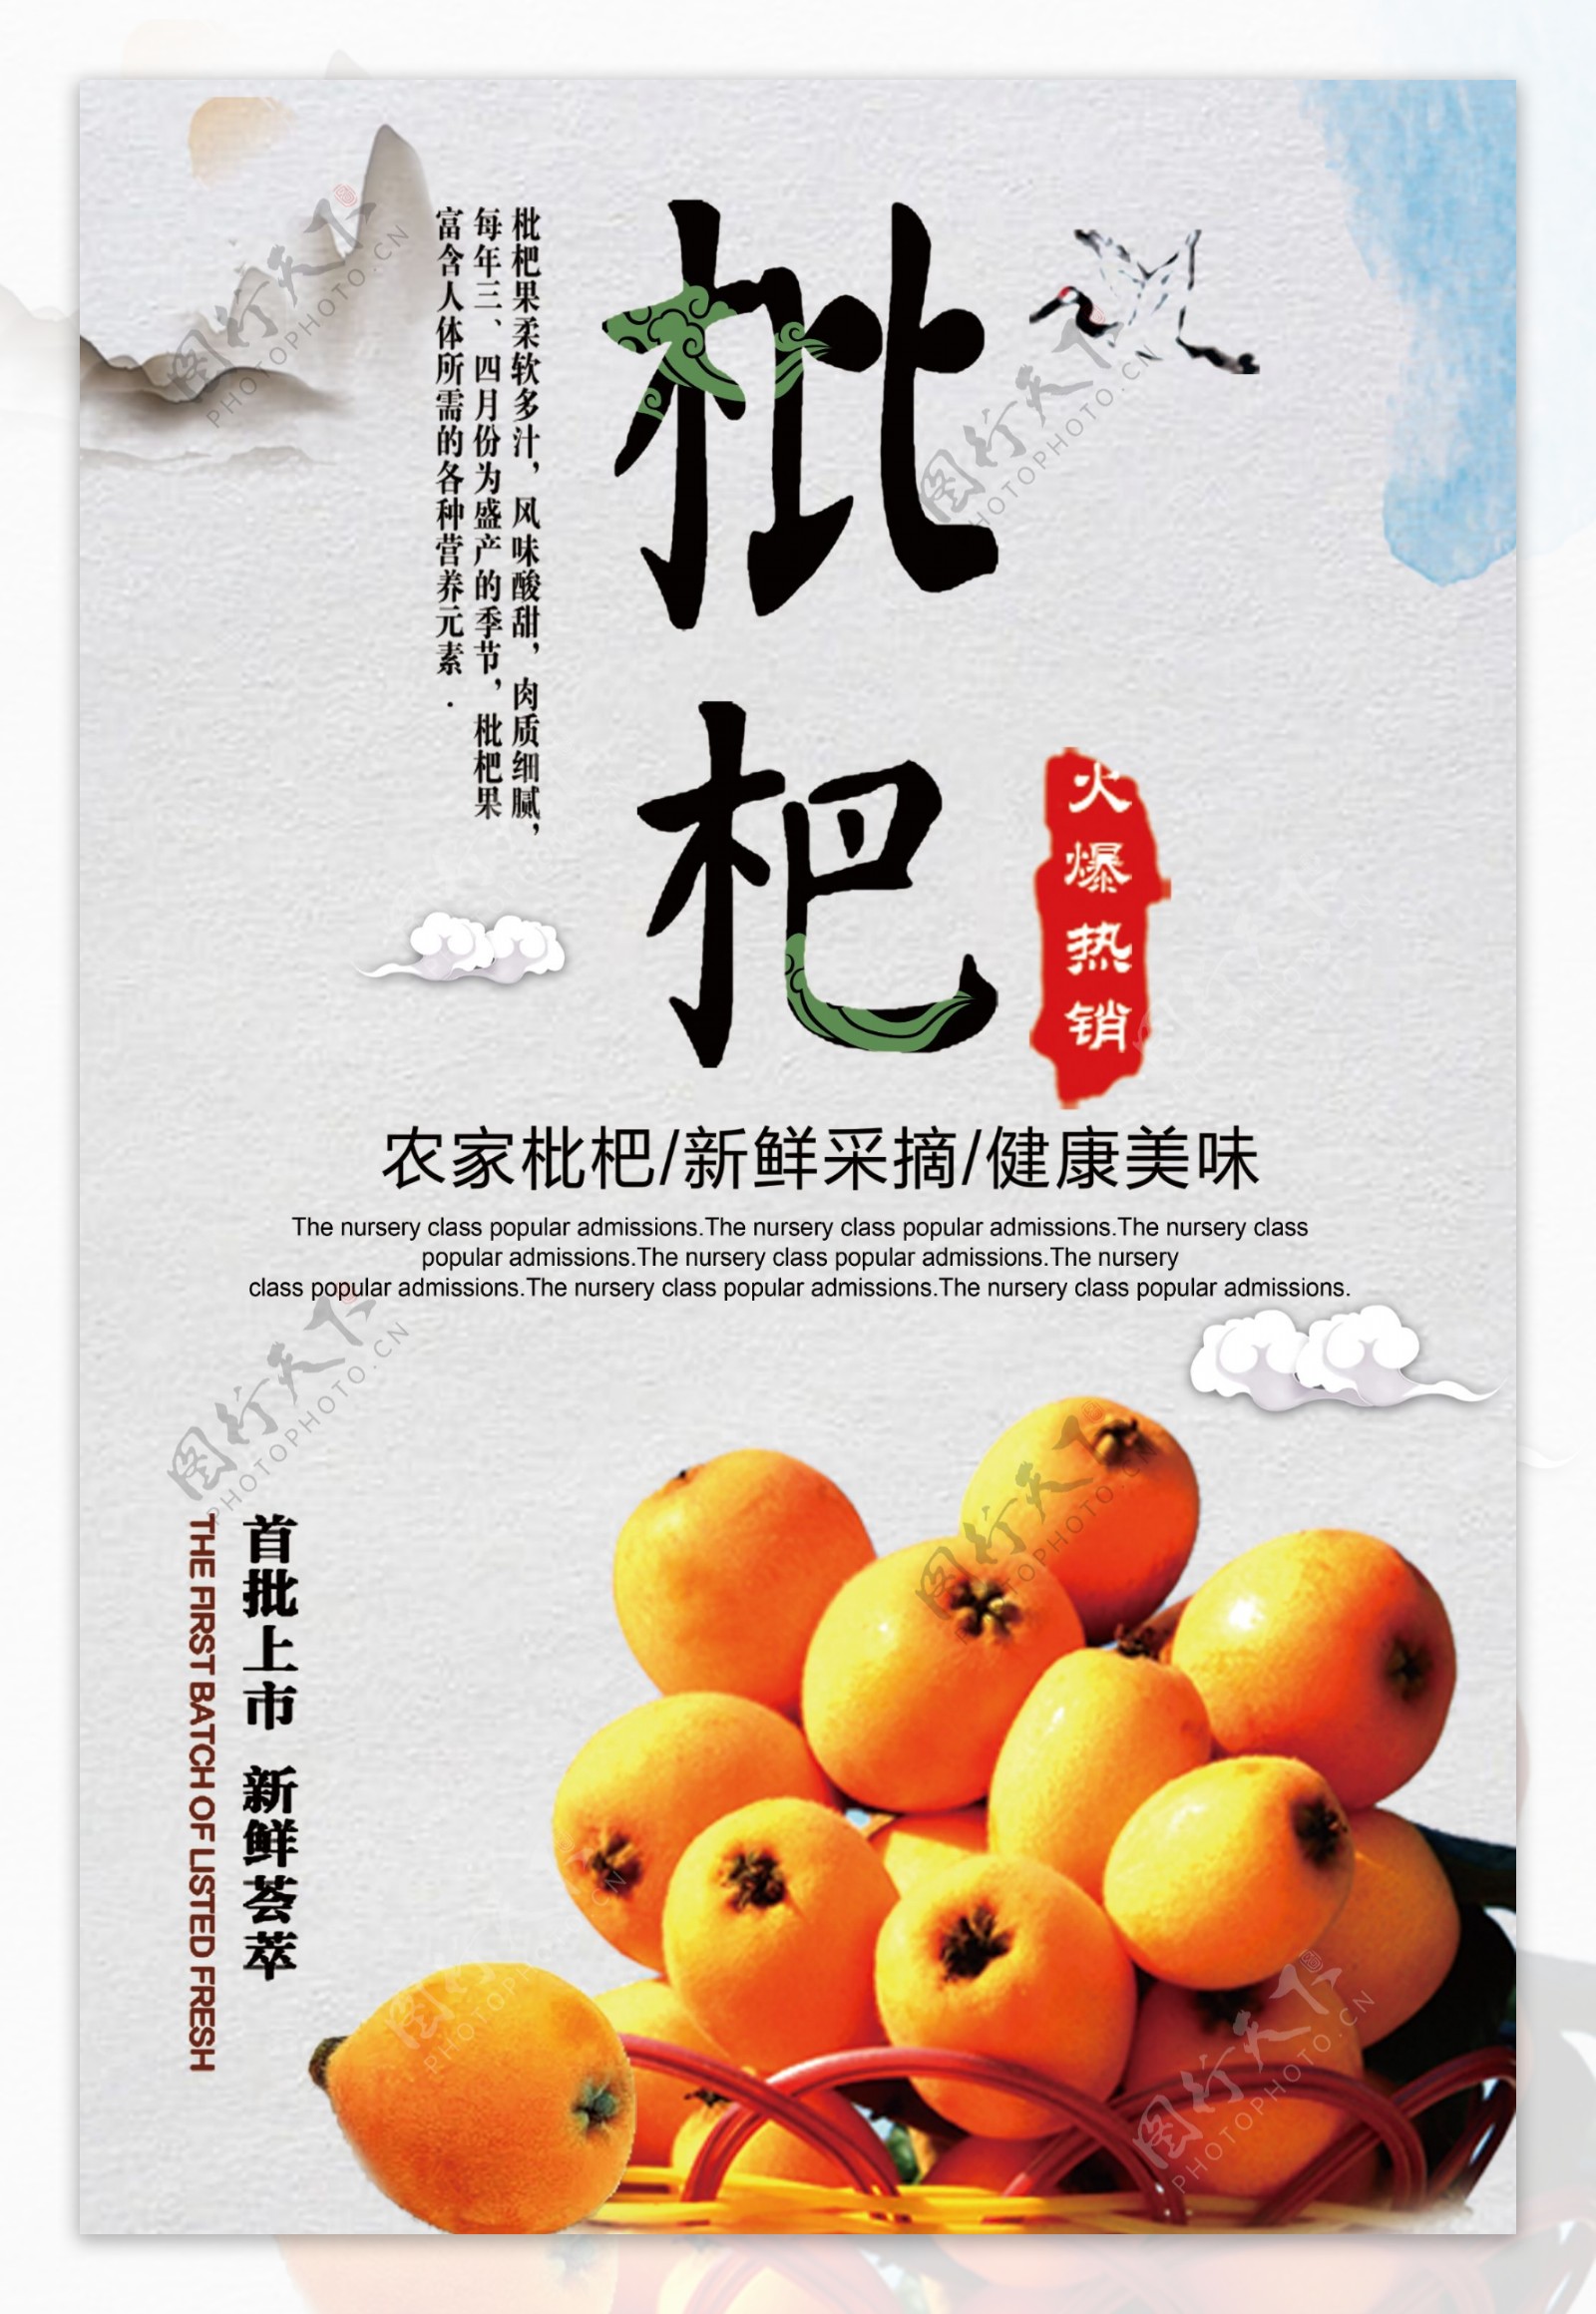 蓝色背景中国风水果枇杷宣传海报